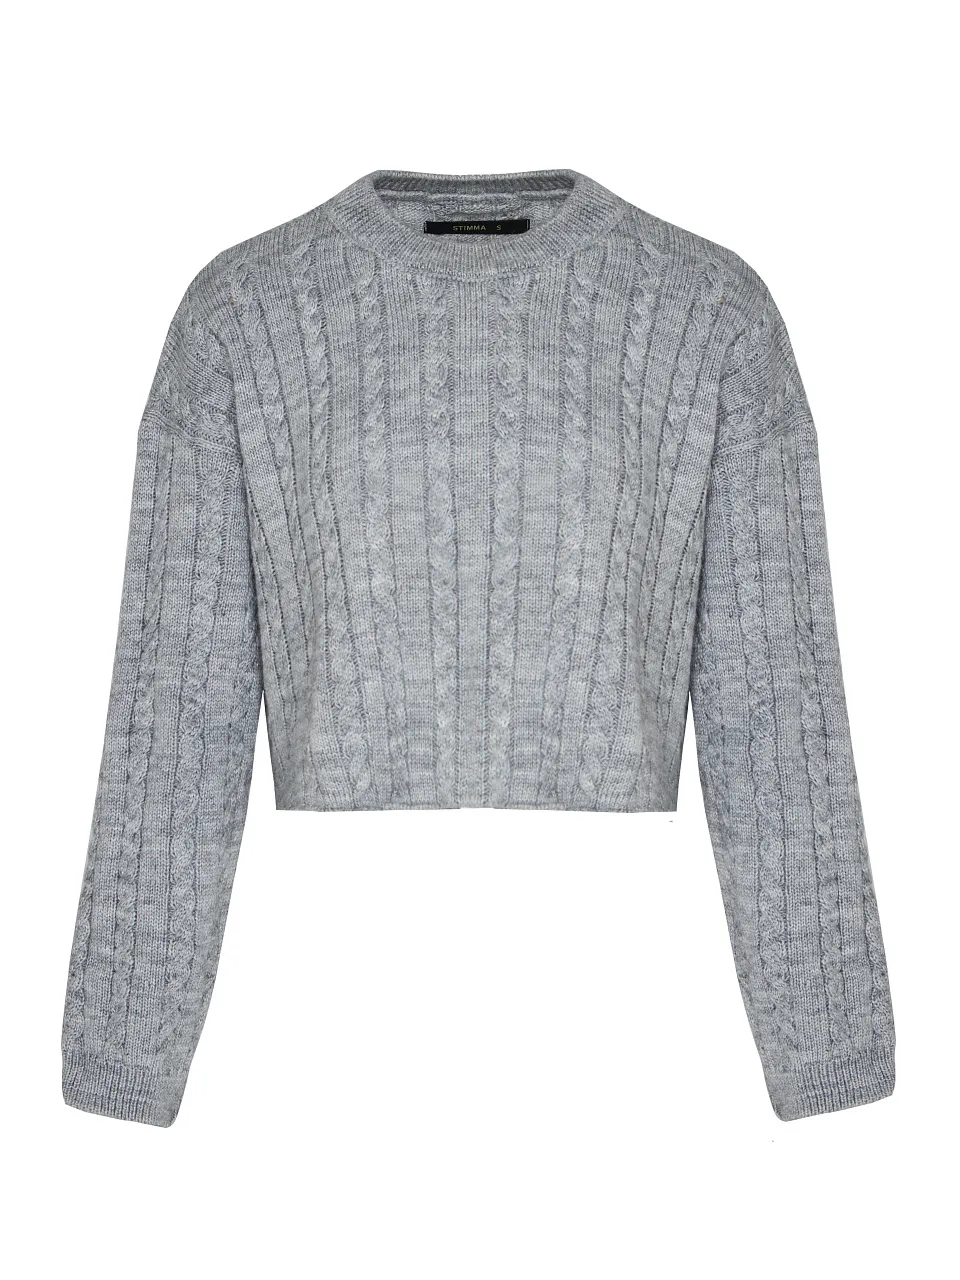 Жіночий светр Stimma Косана, колір - сірий